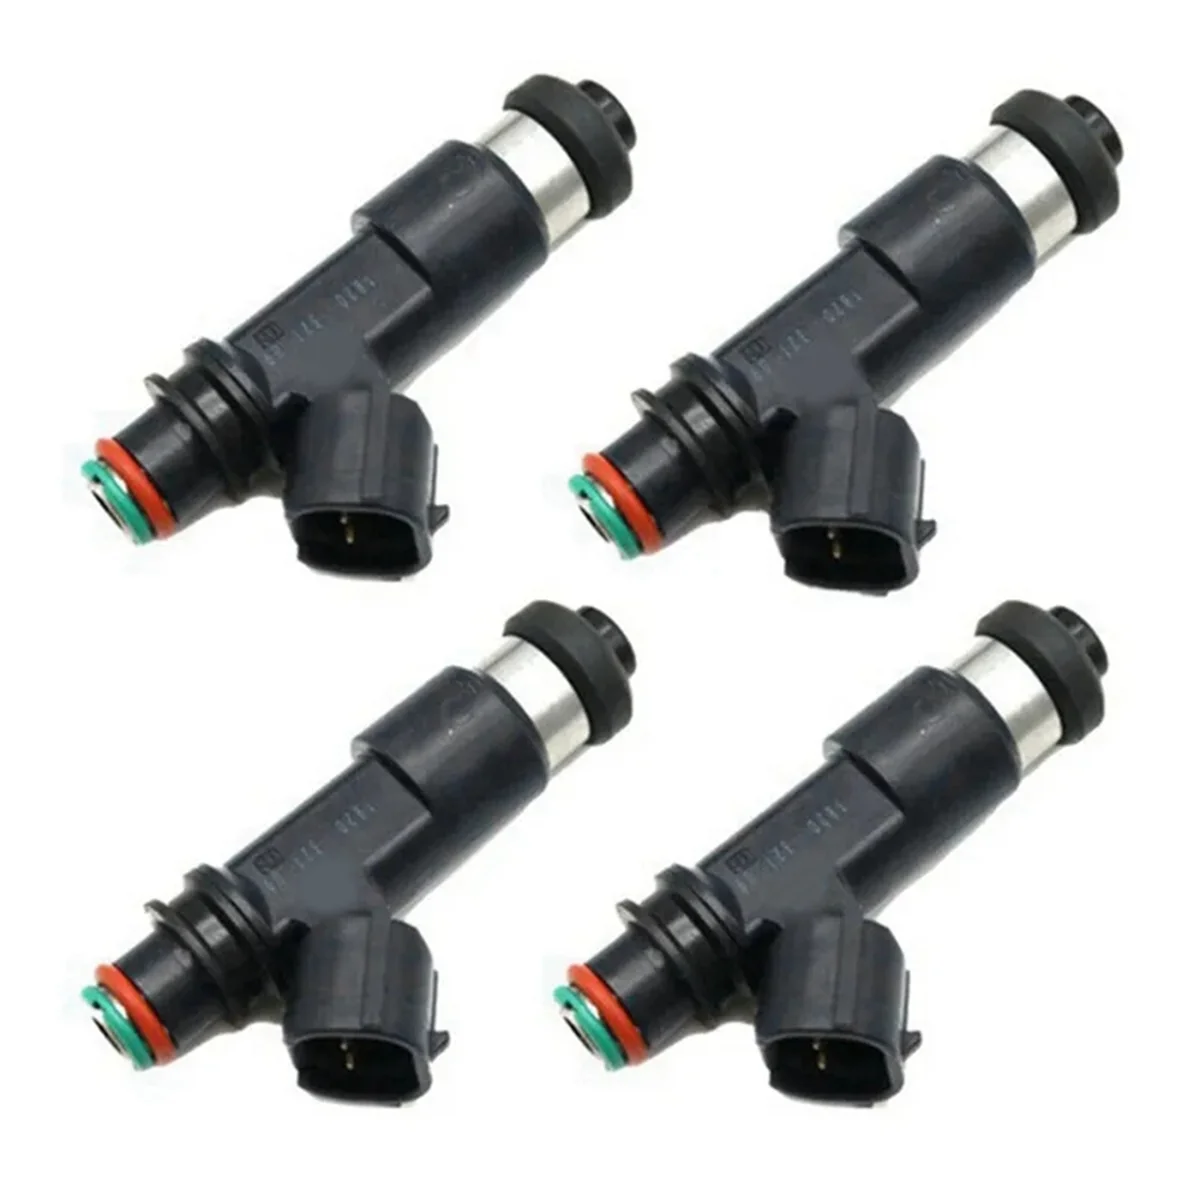 

4PCS Car Fuel Injectors for Polaris Sportsman 500 Ranger 500 Fuel Injector Nozzle 3089893 100-3009 Car Auto Parts